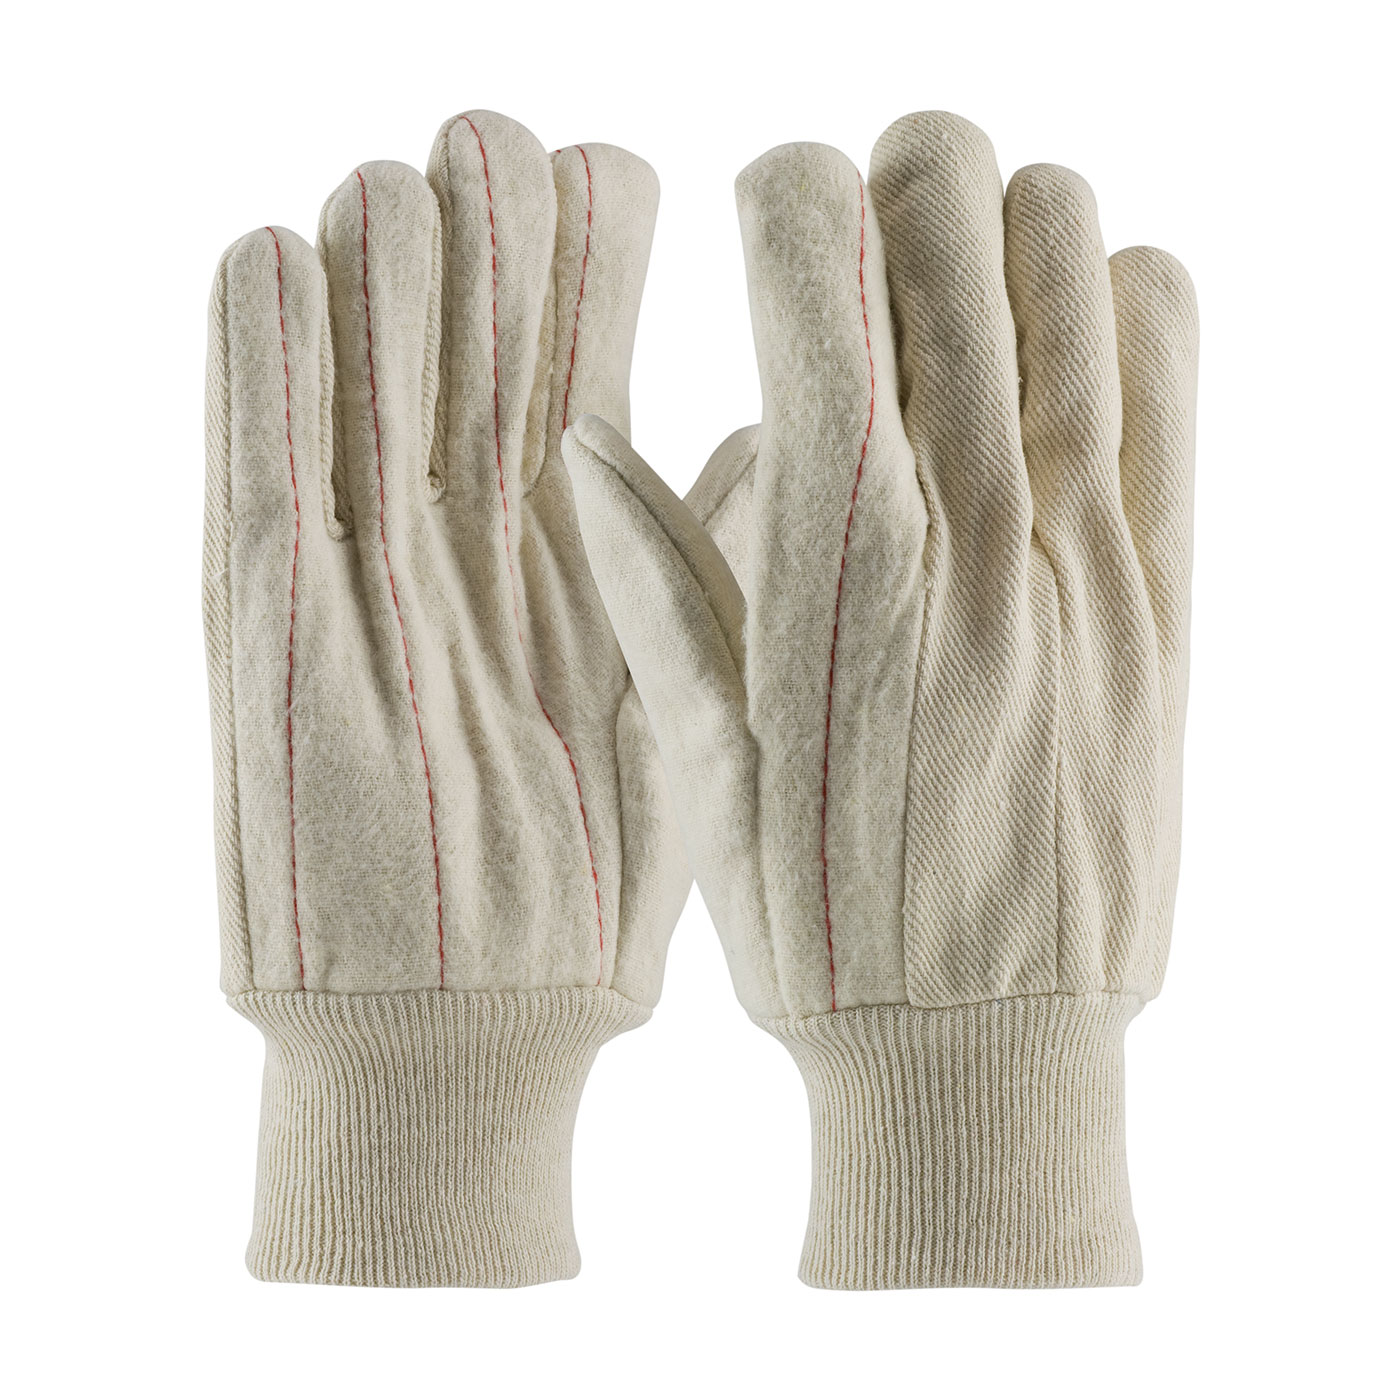 PIP Men's Natural 18oz. Nap-out Finish Double Palm Cotton Canvas Gloves - Knit Wrist